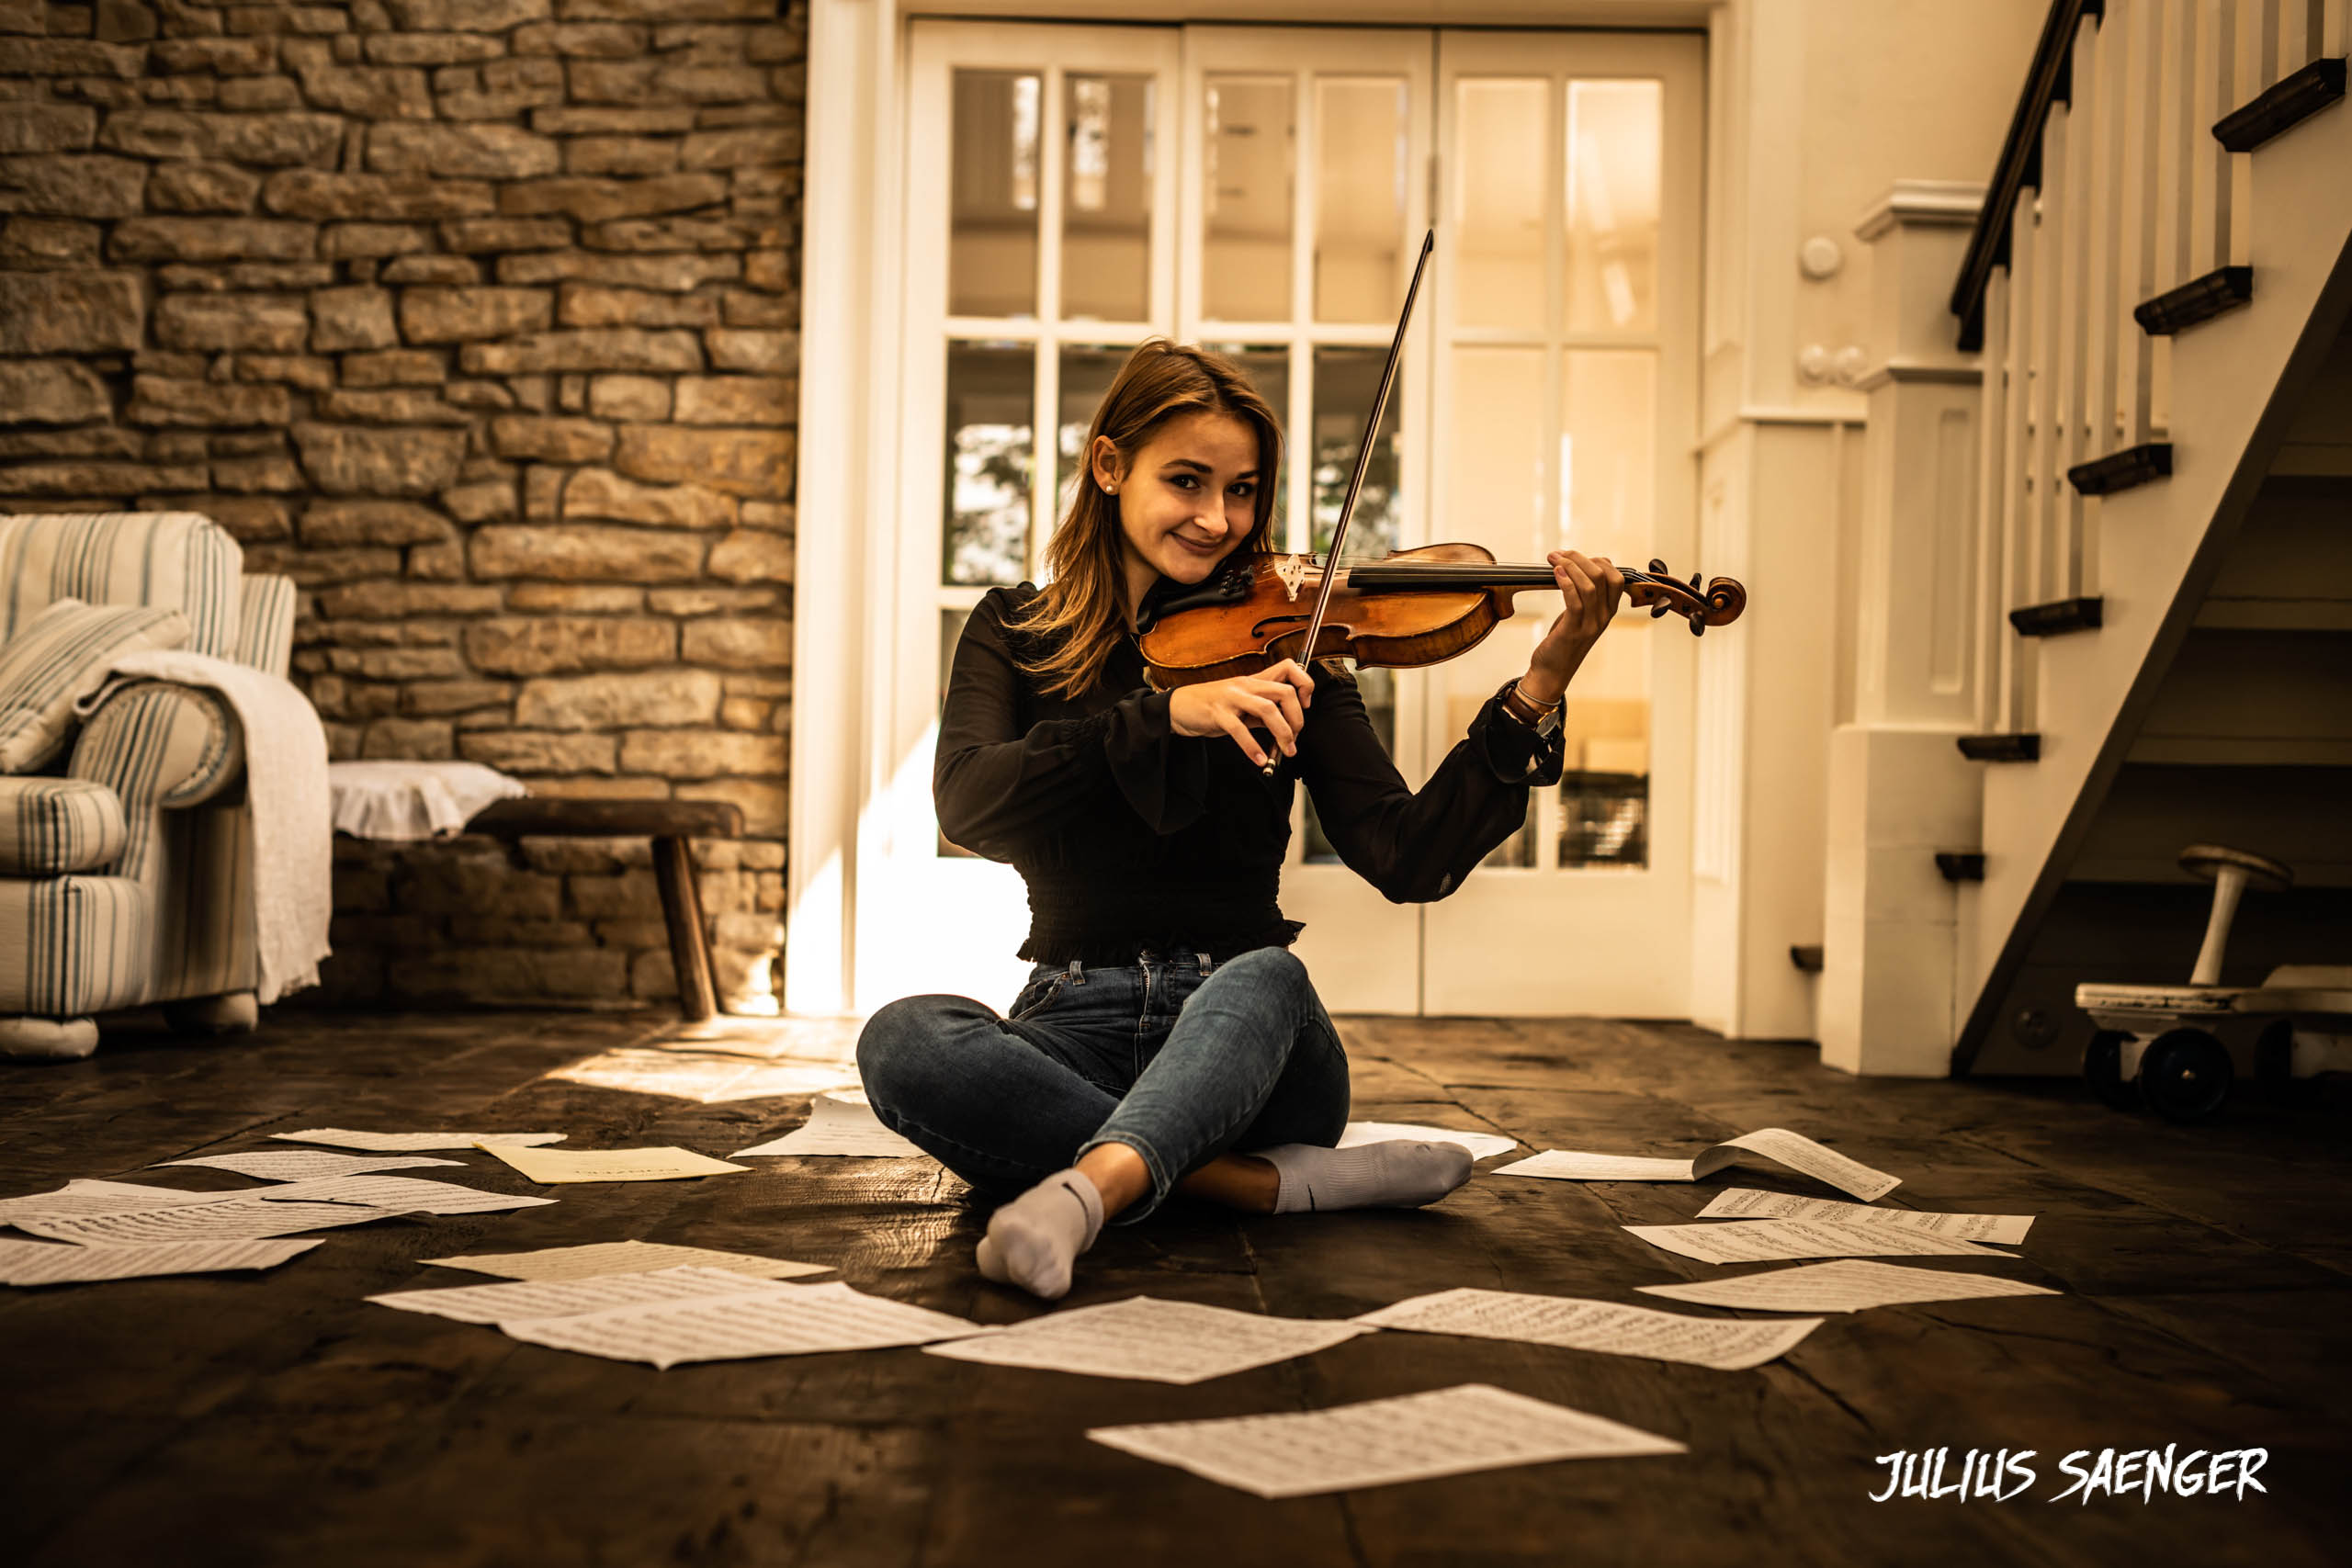 Isabel Shauer am Geige spielen zwischen Notenblättern